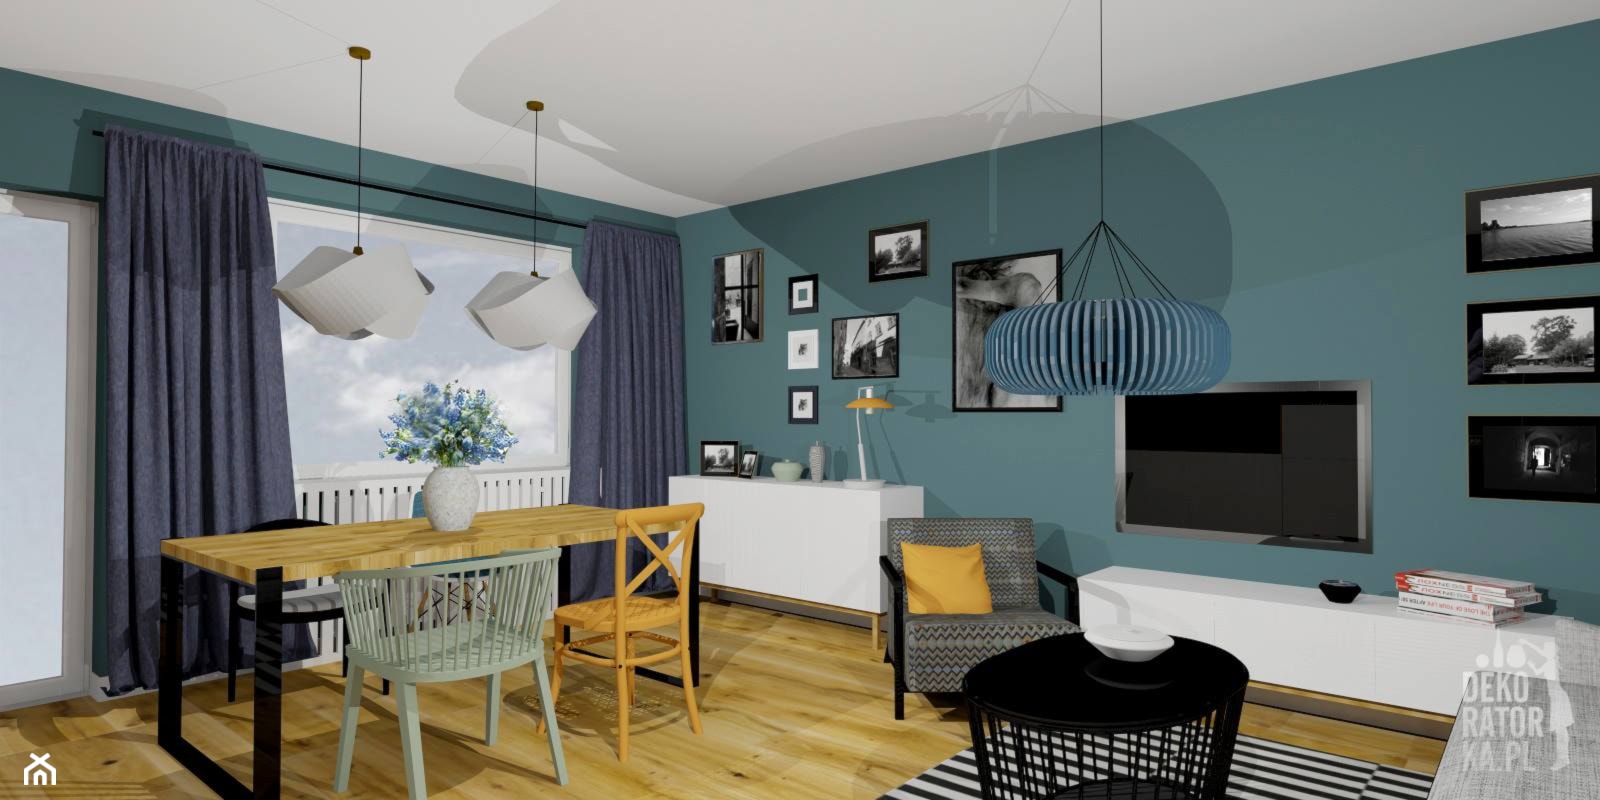 POZNAŃ | Mieszkanie prywatne | Koncepcja - Salon, styl nowoczesny - zdjęcie od dekoratorka.pl - Homebook